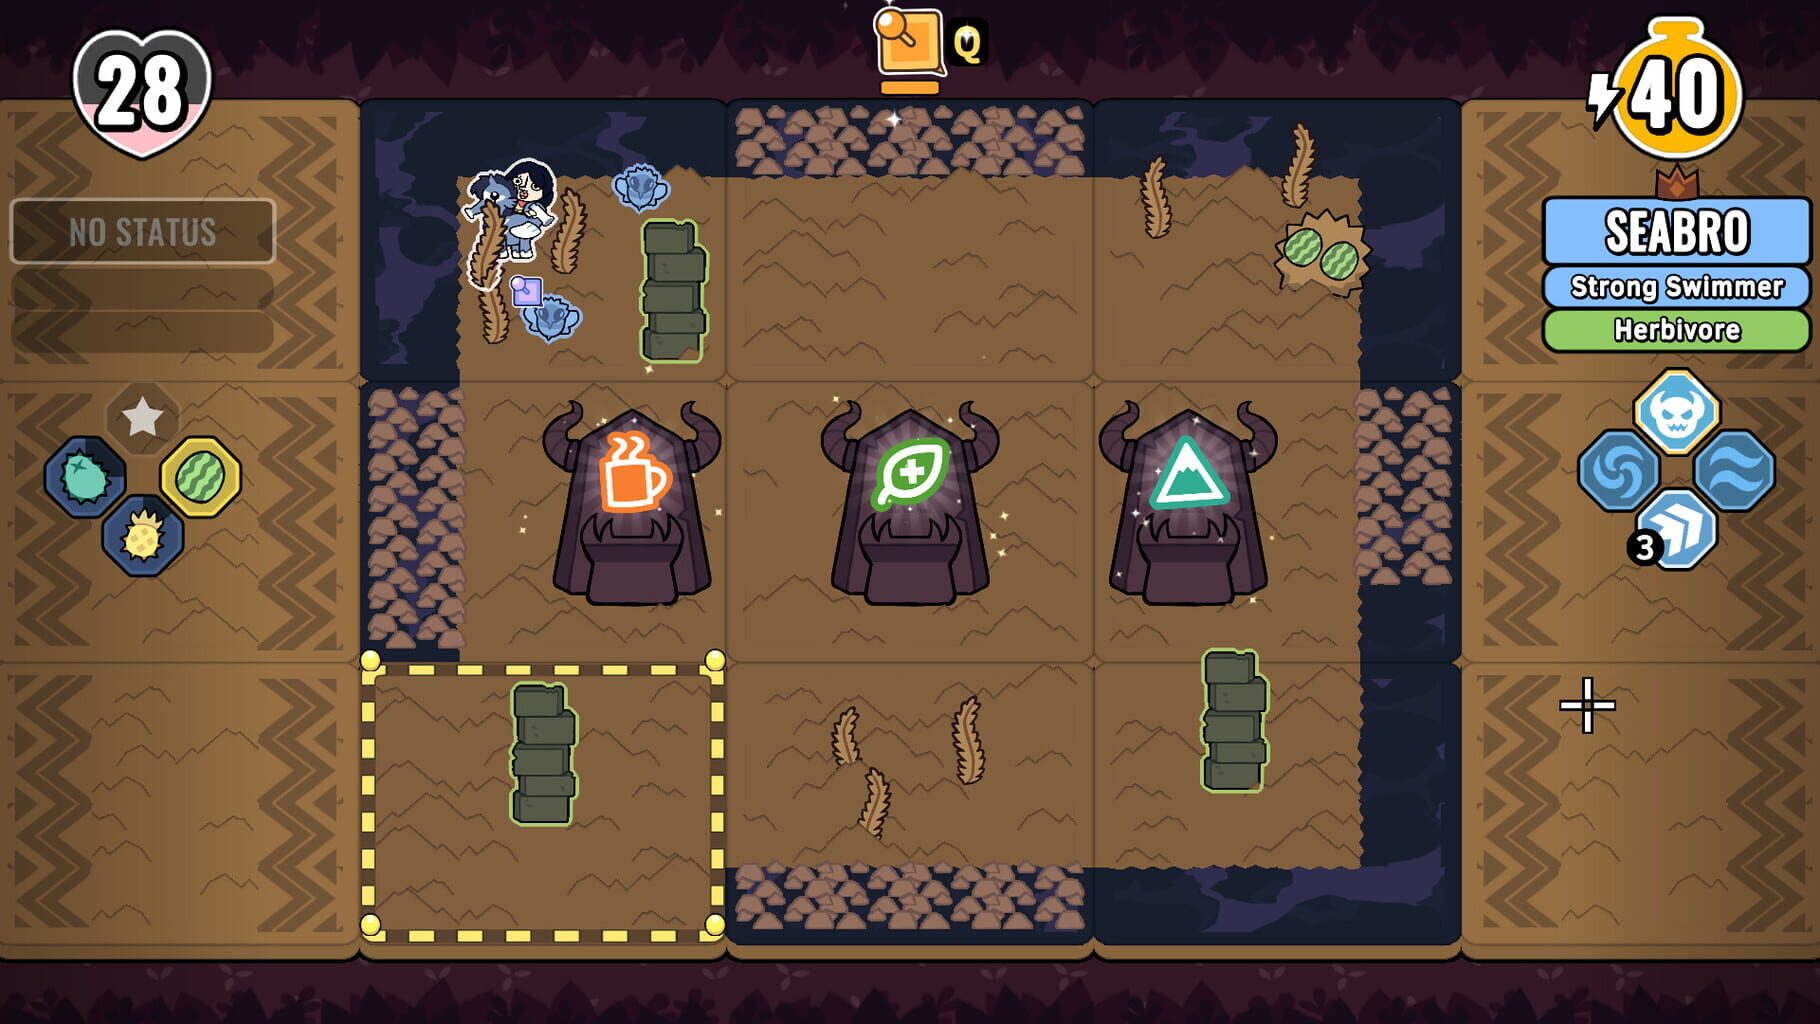 Patch Quest screenshots